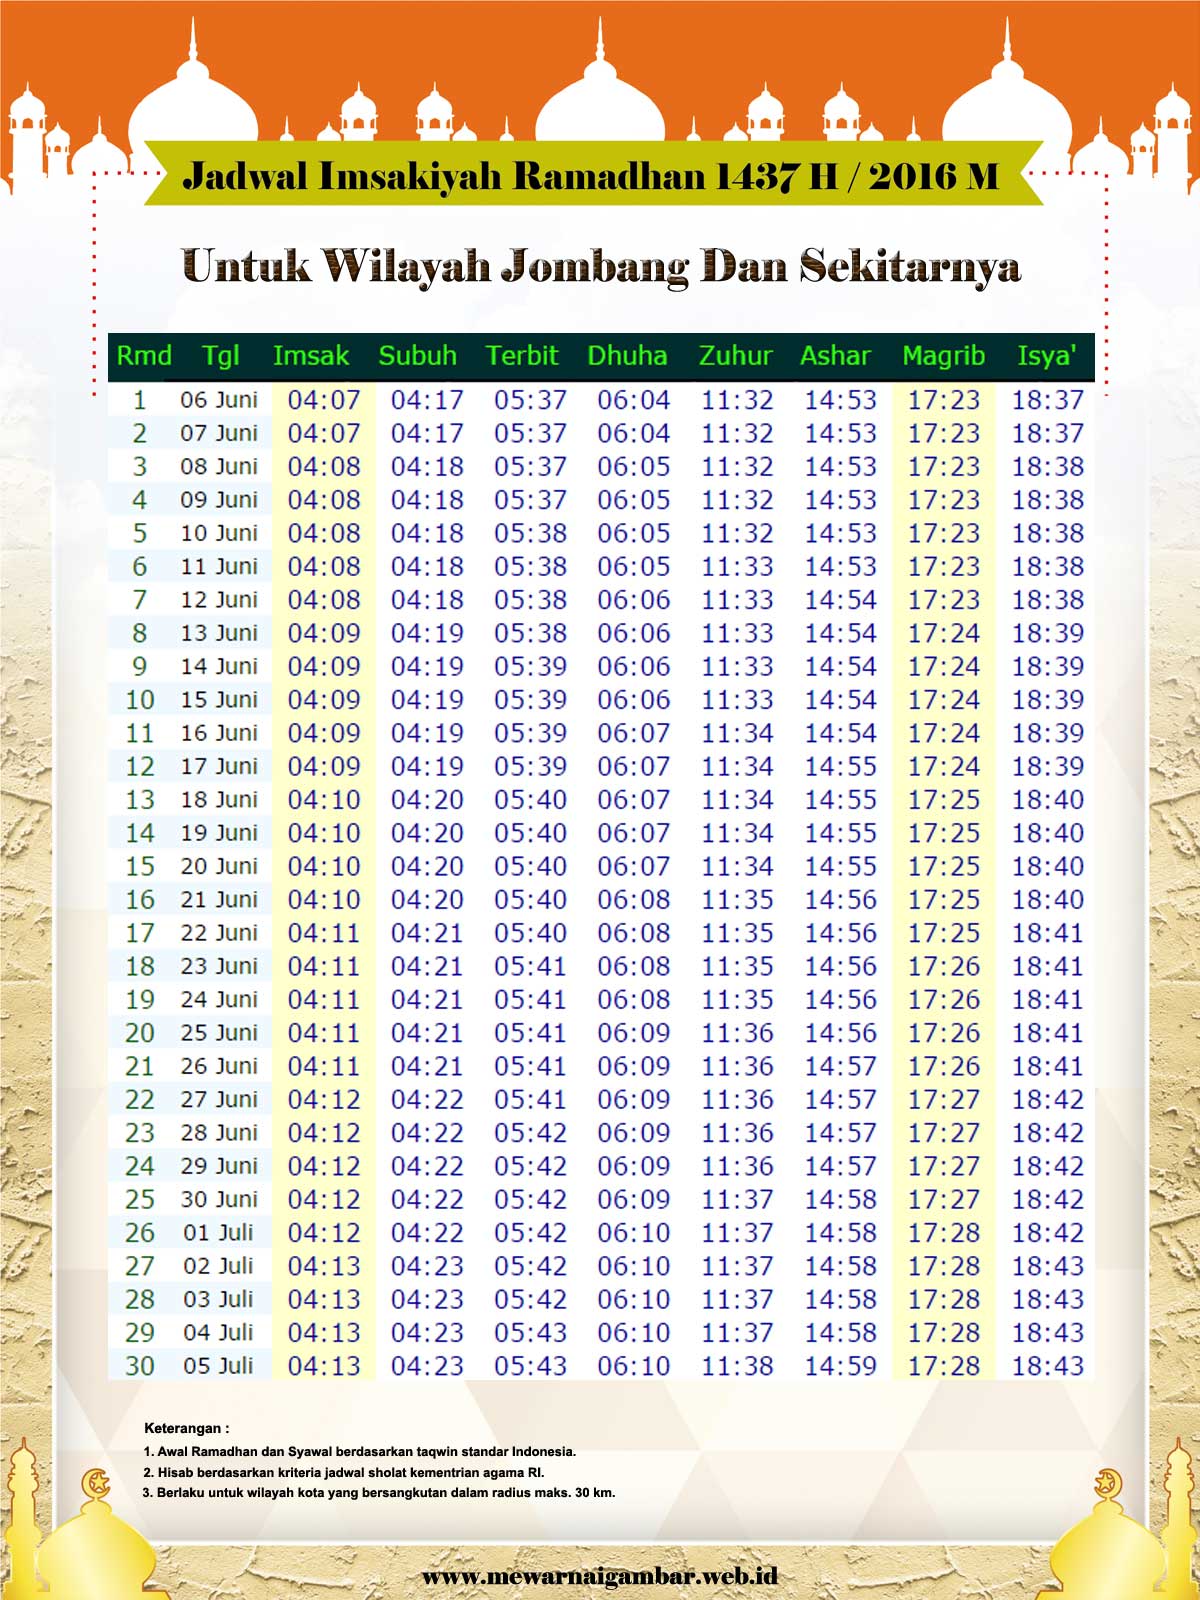 Bacaan Sholat Muhammadiyah : Free Programs, Utilities and 